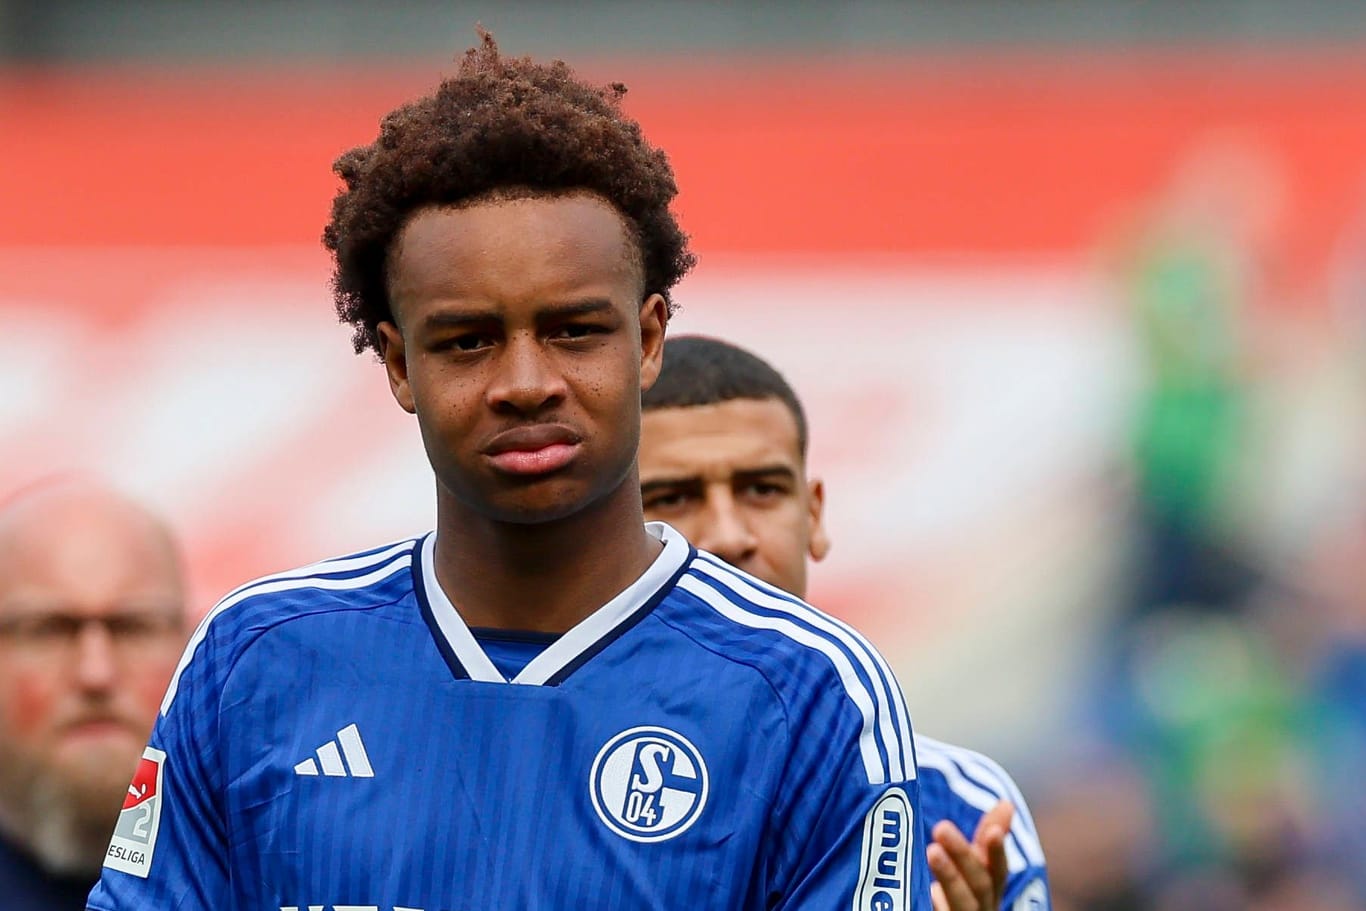 Assan Ouedraogo: Er spielte beim FC Schalke groß auf.